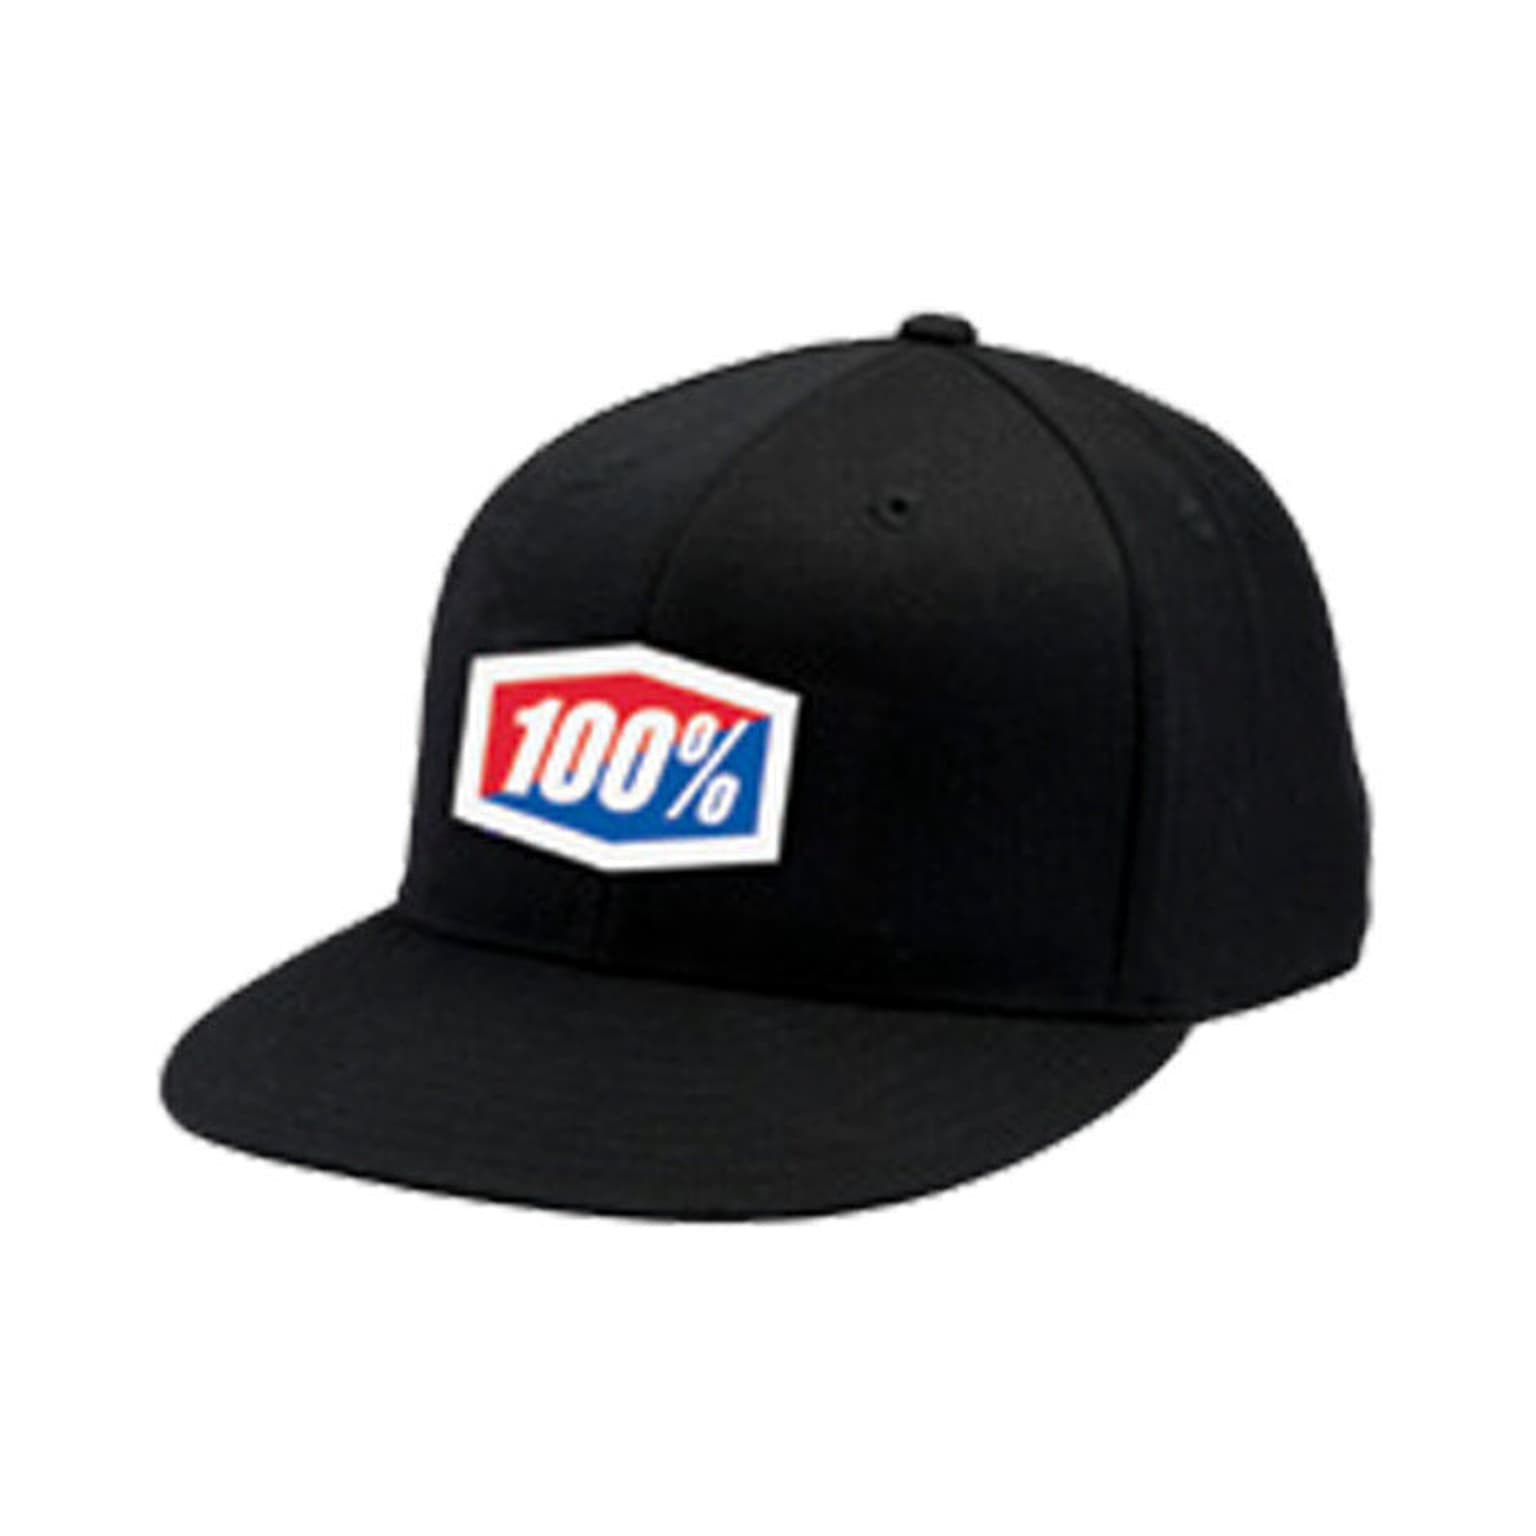 100% 100% Official J-Fit Flexfit Cappellino nero 1